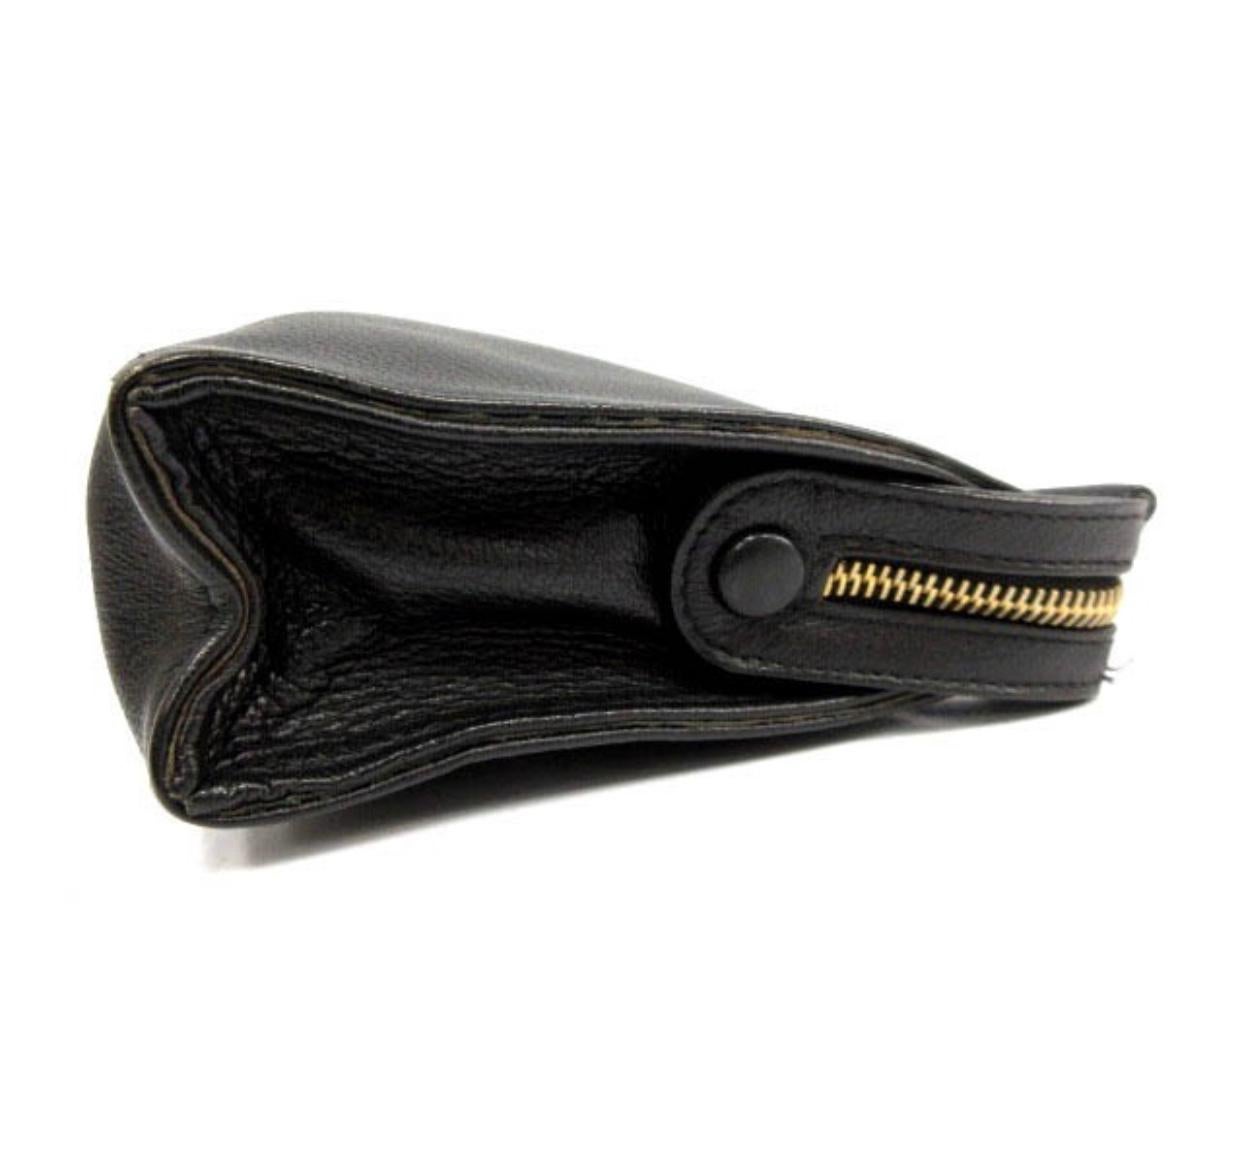 Black Vintage Gianni Versace black leather clutch purse, pouch, case bag with medusa.